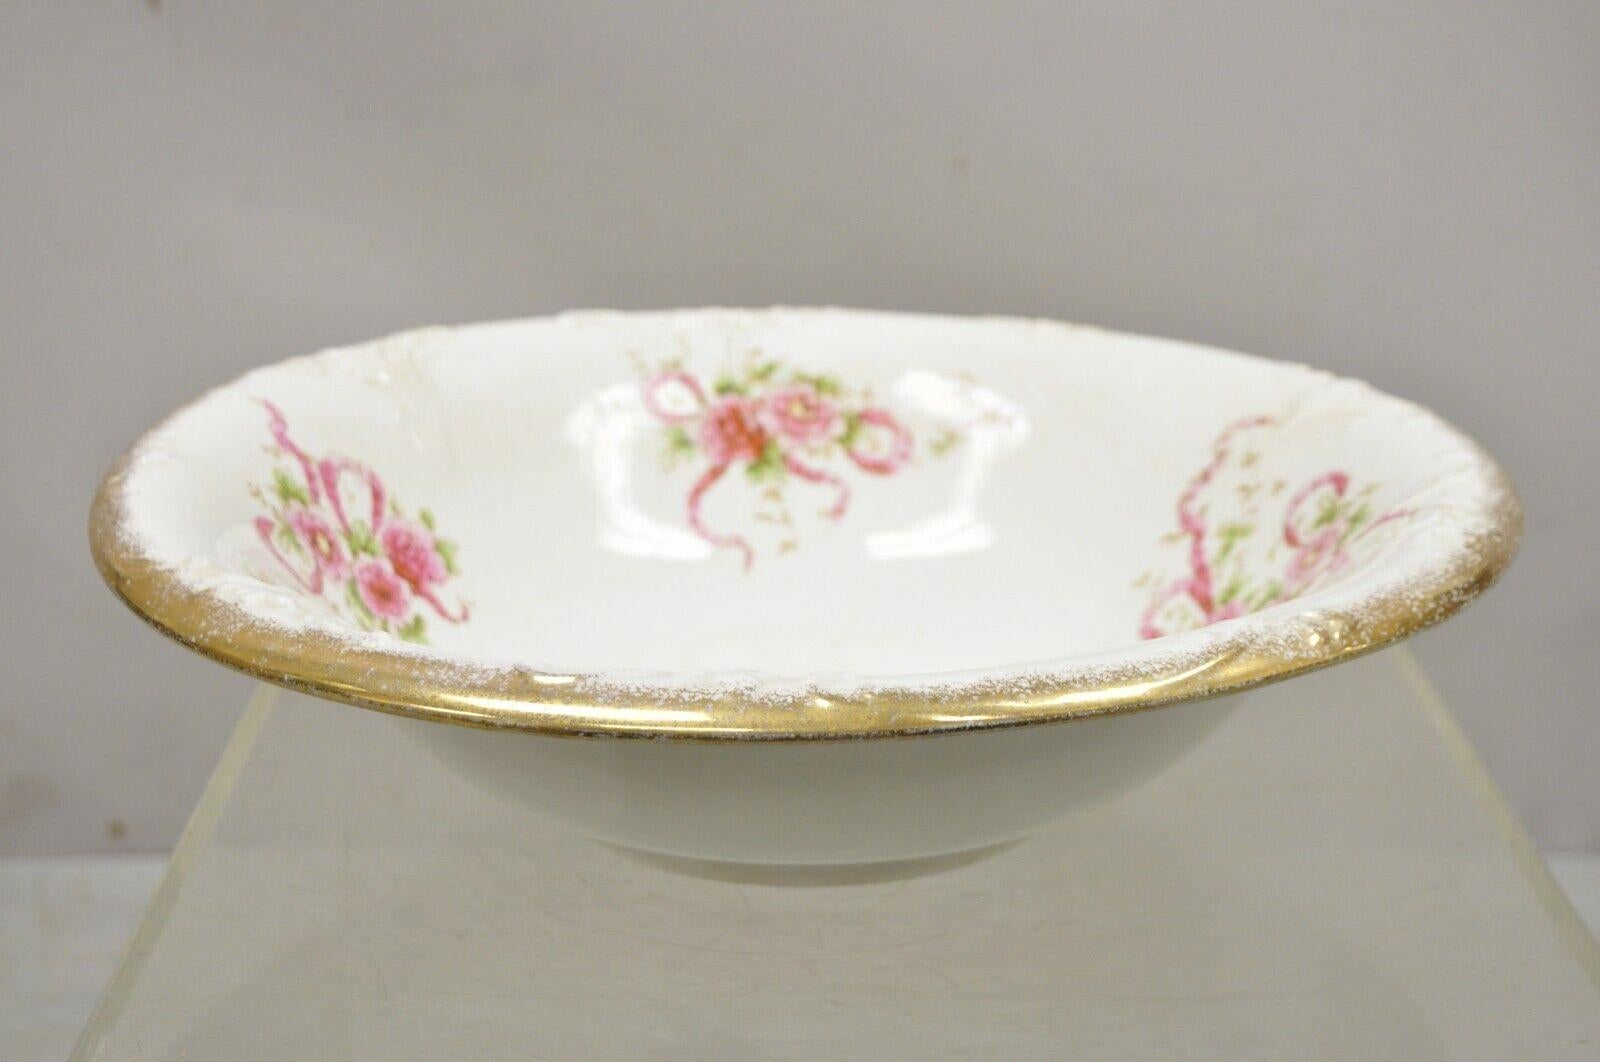 Antique W.H. Tatler Porcelain Pink Rose Flower Wash Basin - 4 Pc Set For Sale 1